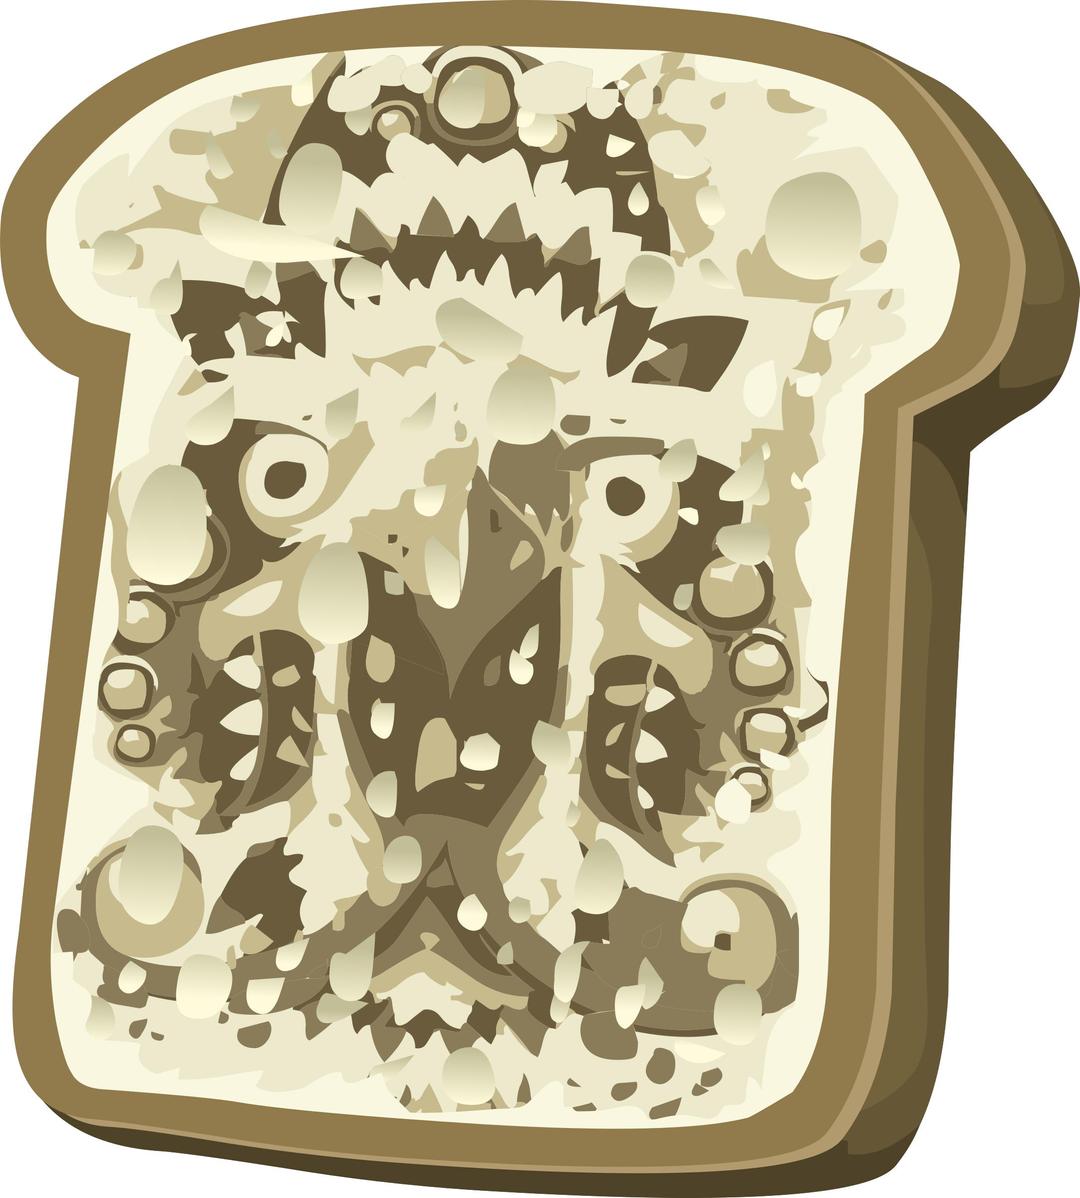 Rare Items Pareidolic Cosma Toast png transparent